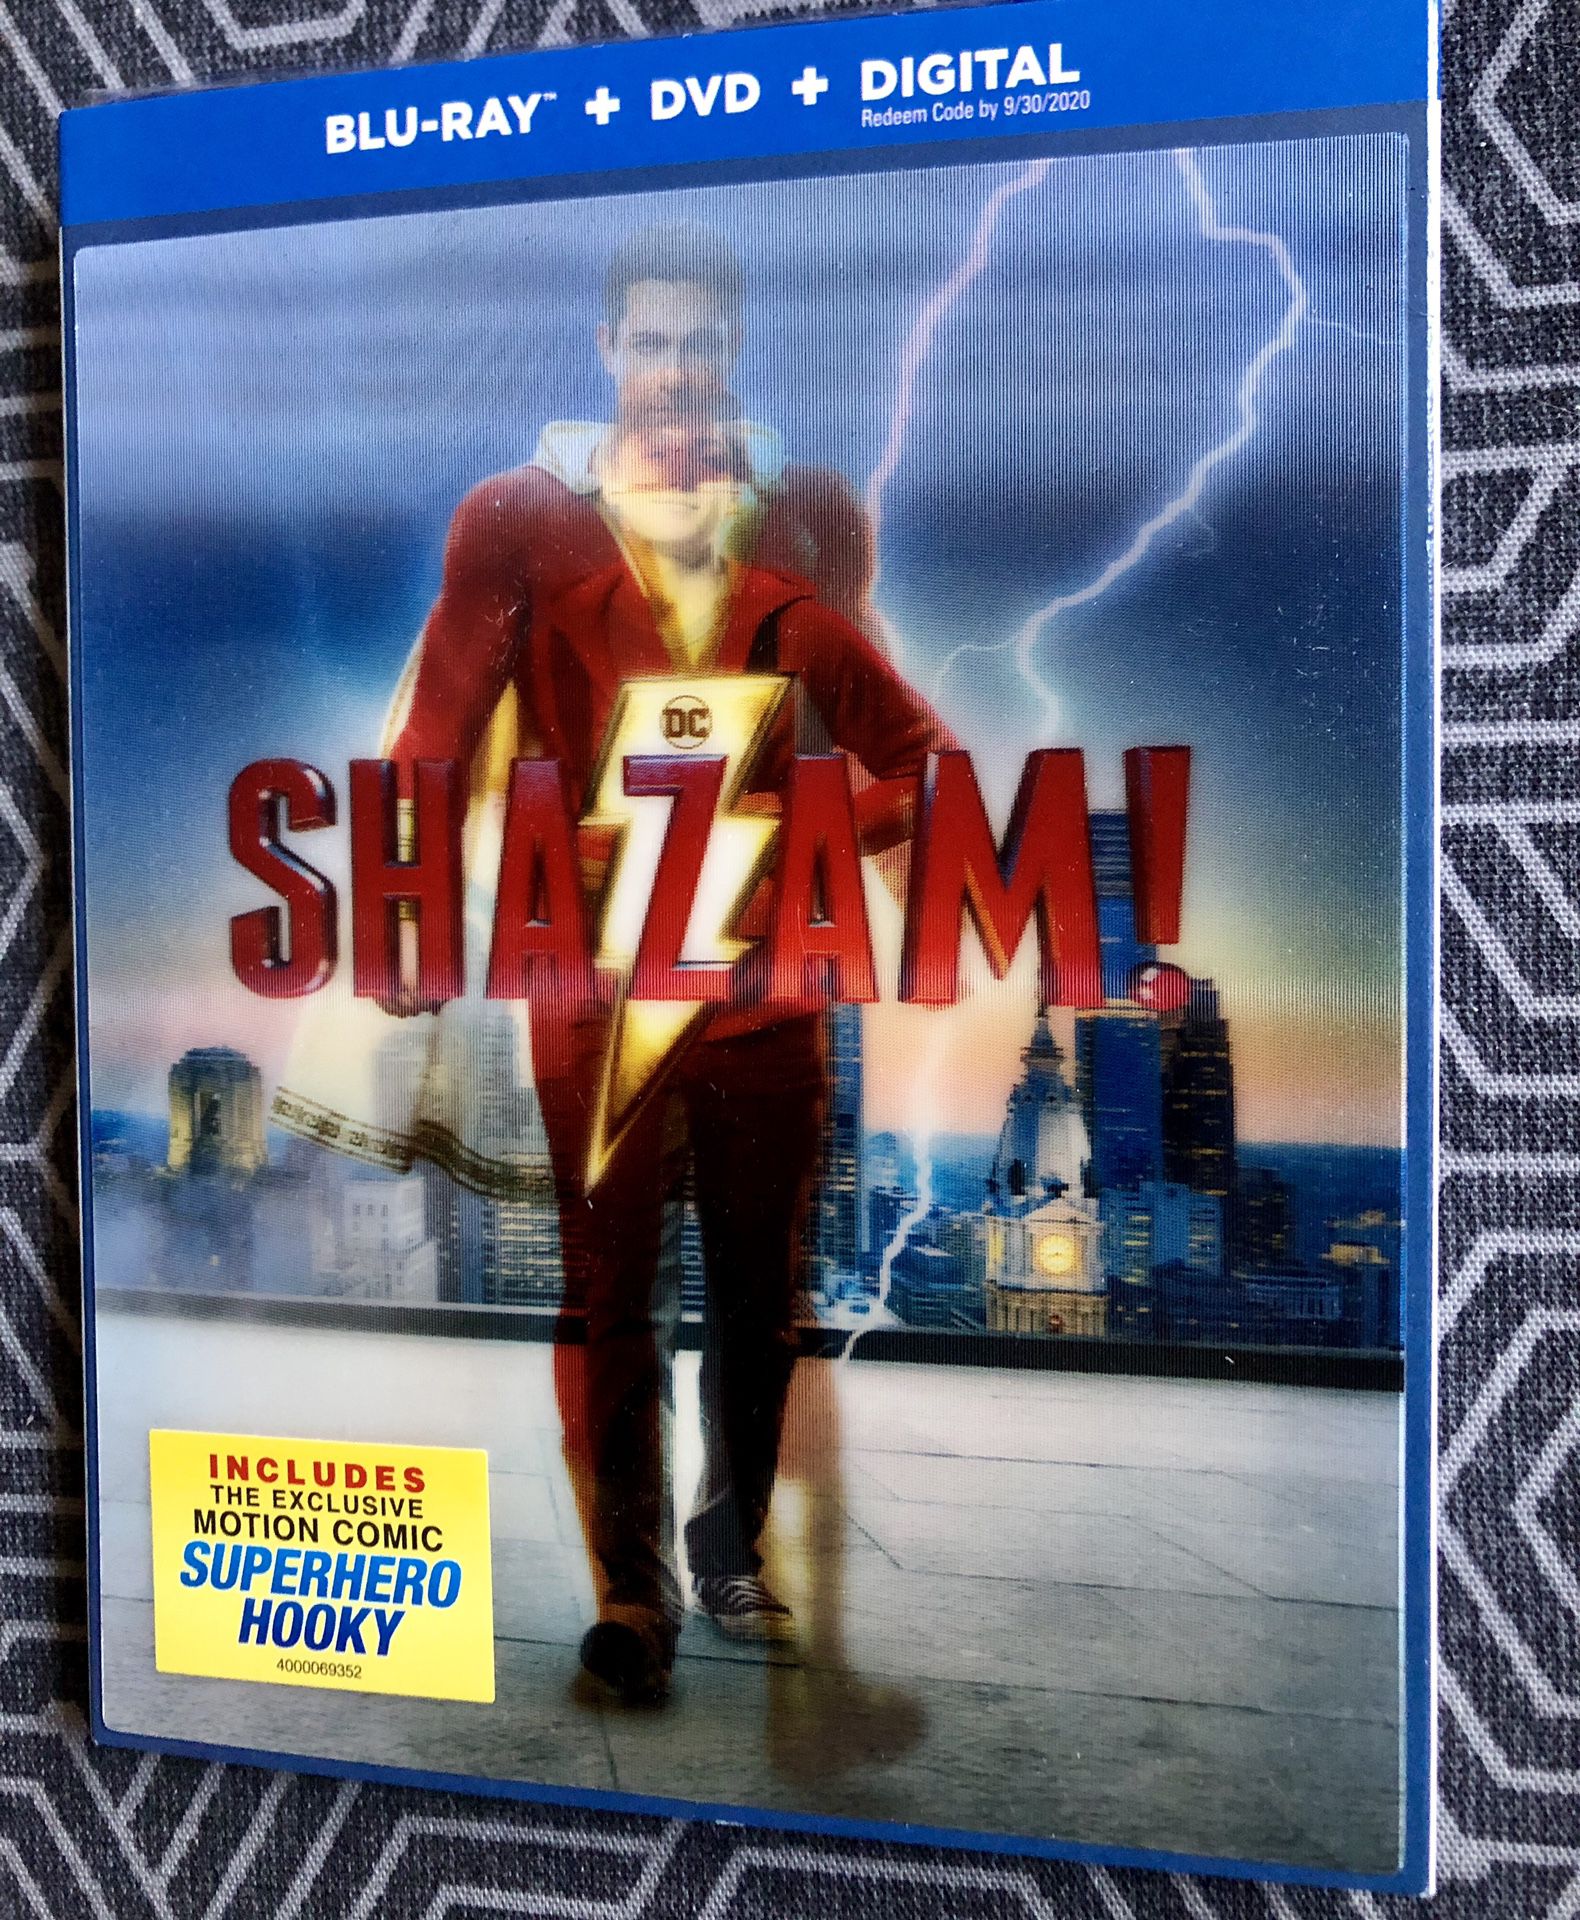 Movie "Shazam" Bluray + Dvd + Digital